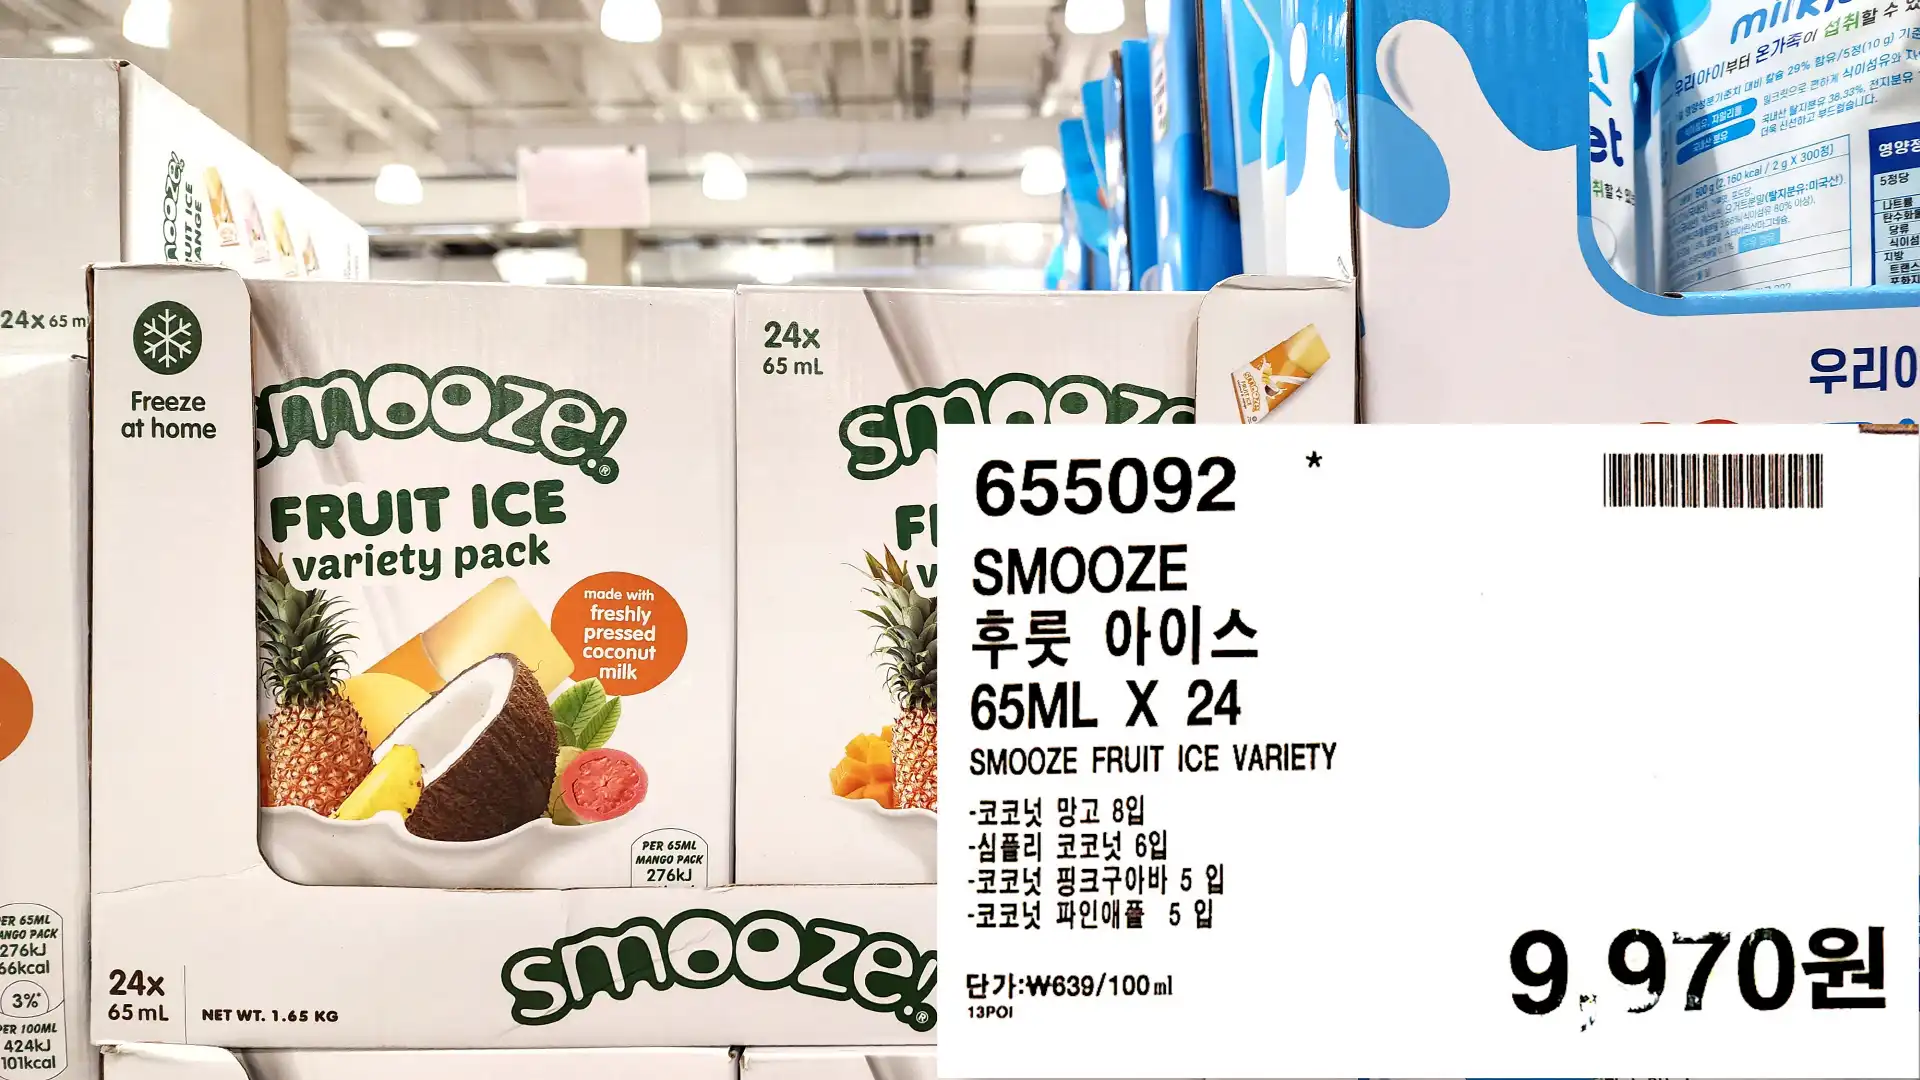 SMOOZE
후룻 아이스
65ML X 24
SMOOZE FRUIT ICE VARIETY
-코코넛 망고 8입
-심플리 코코넛 6입
-코코넛 핑크구아바 5 입
-코코넛 파인애플 5입
9.970원